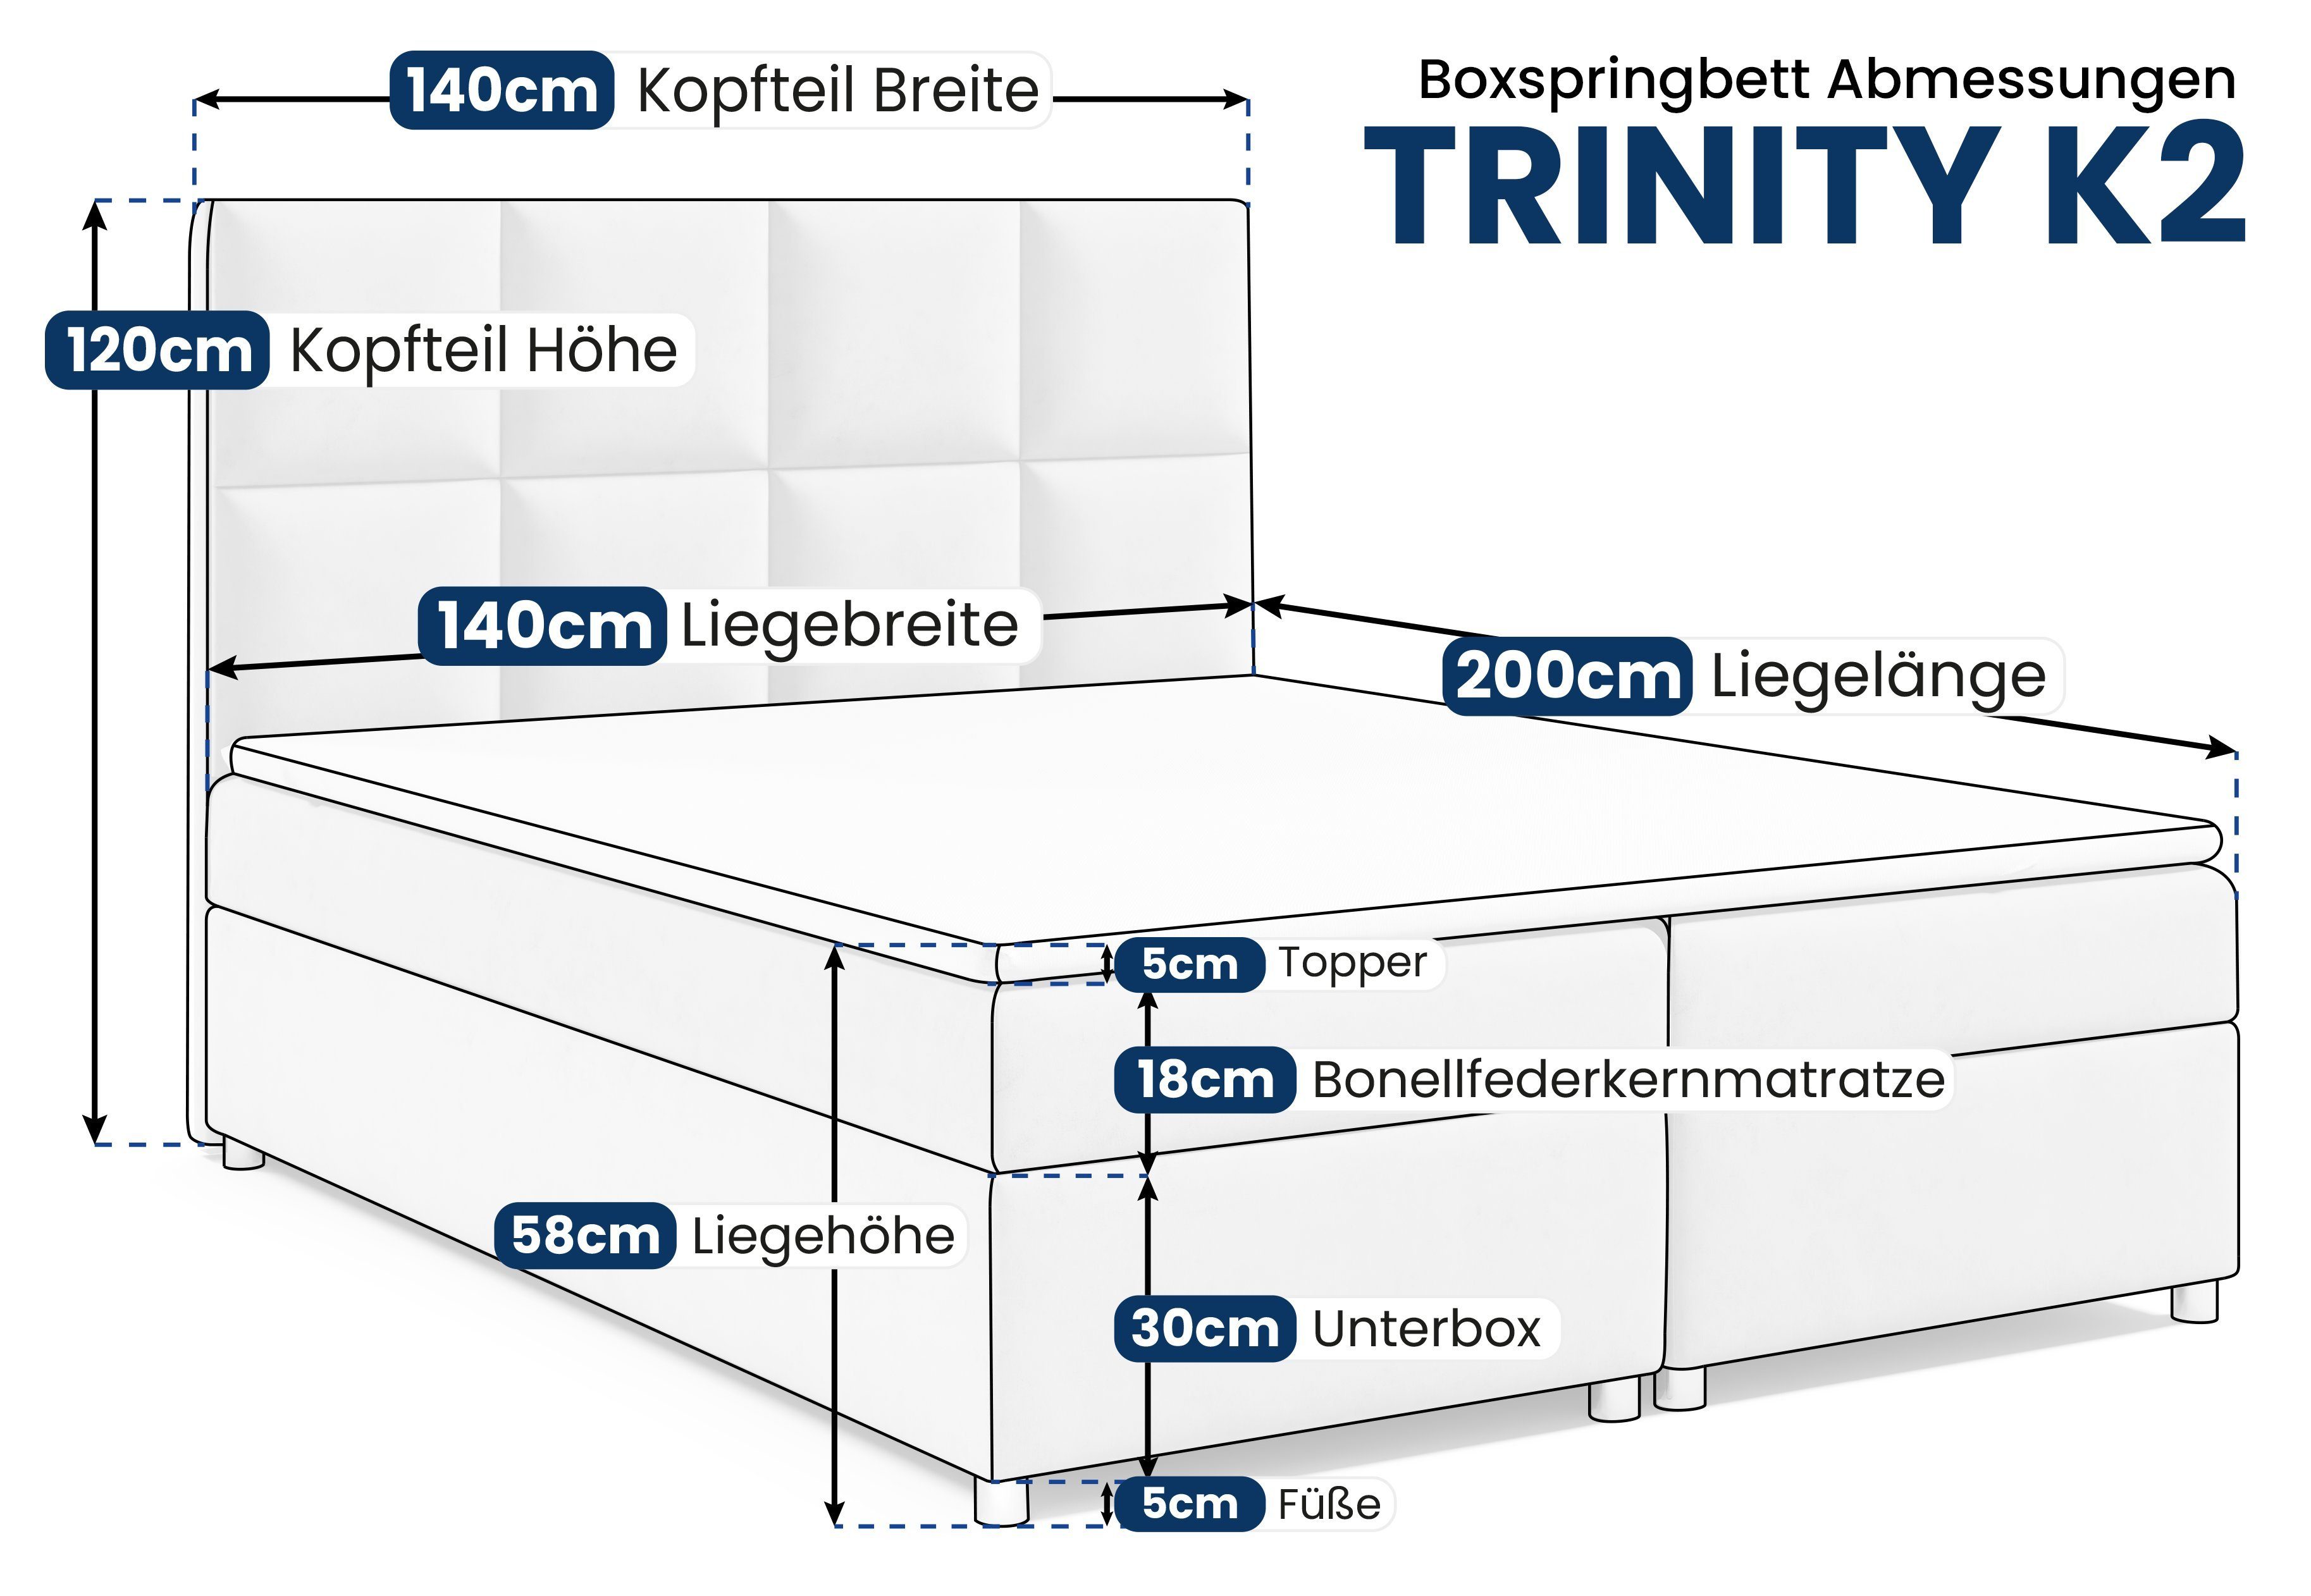 Best for Home Boxspringbett Trinity Topper Beige mit Bettkasten und K2